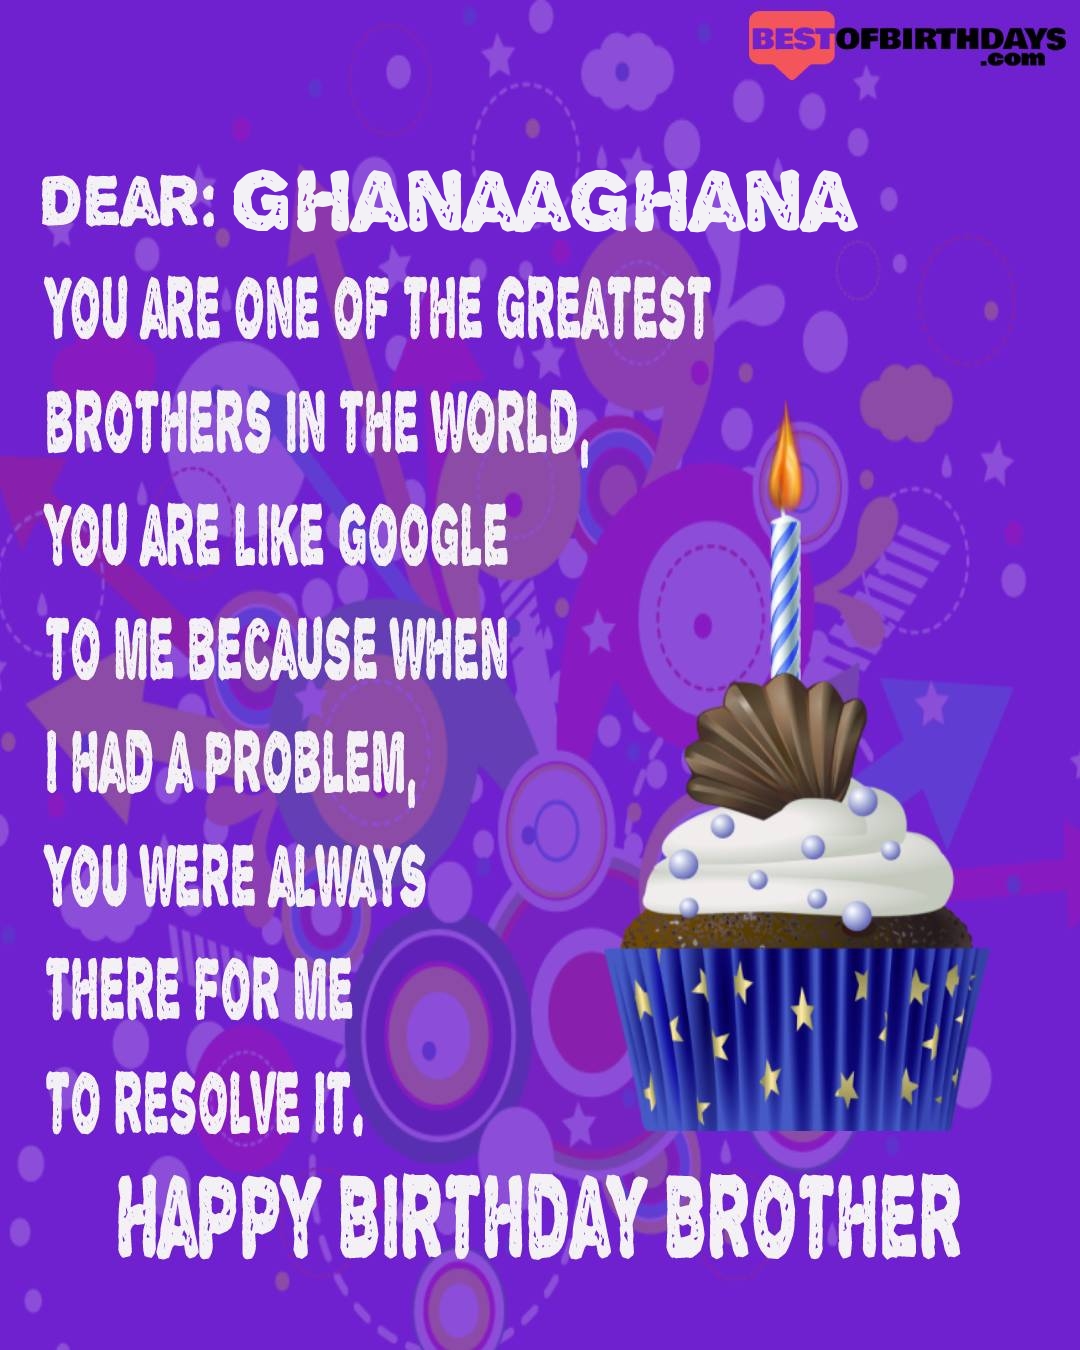 Happy birthday ghanaaghana bhai brother bro